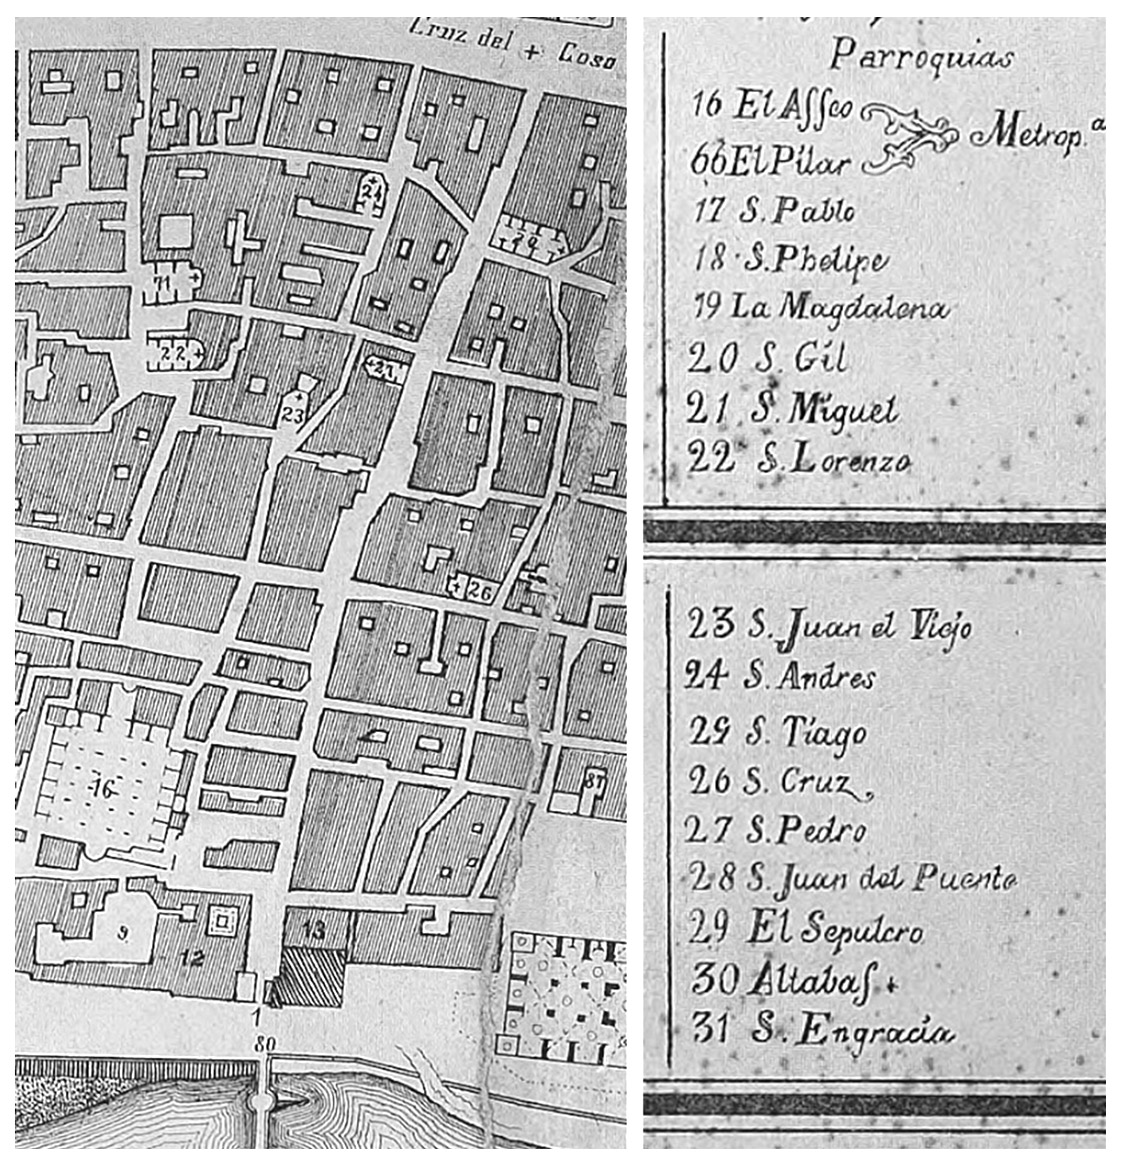 Fragmentos del plano levantado por Carlos Casanova en 1769